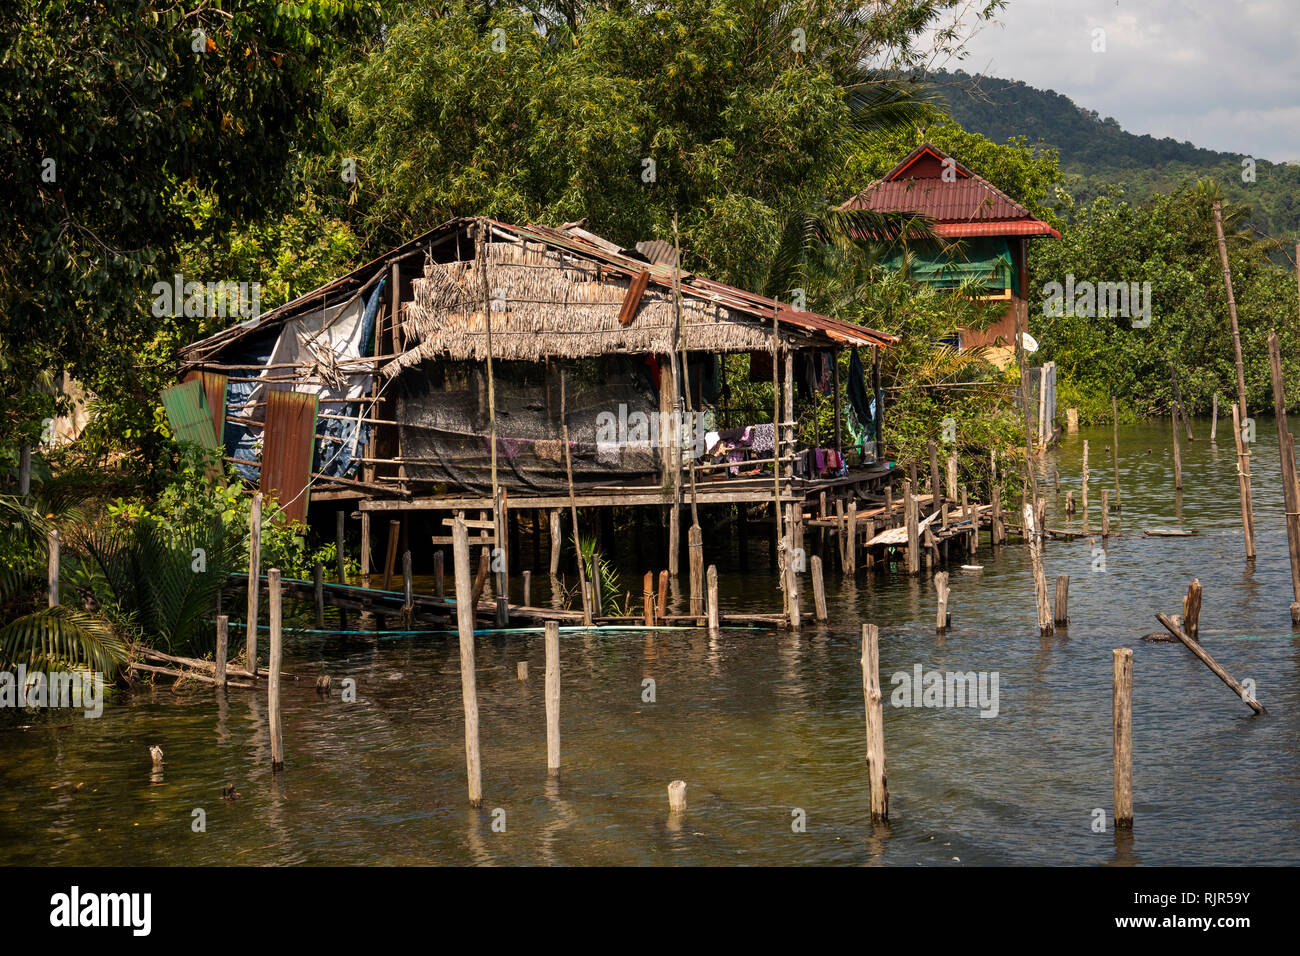 Cm273Cambodia, Koh Kong Province, Tatai River, riverside fishermen’s houses built on stilts Stock Photo